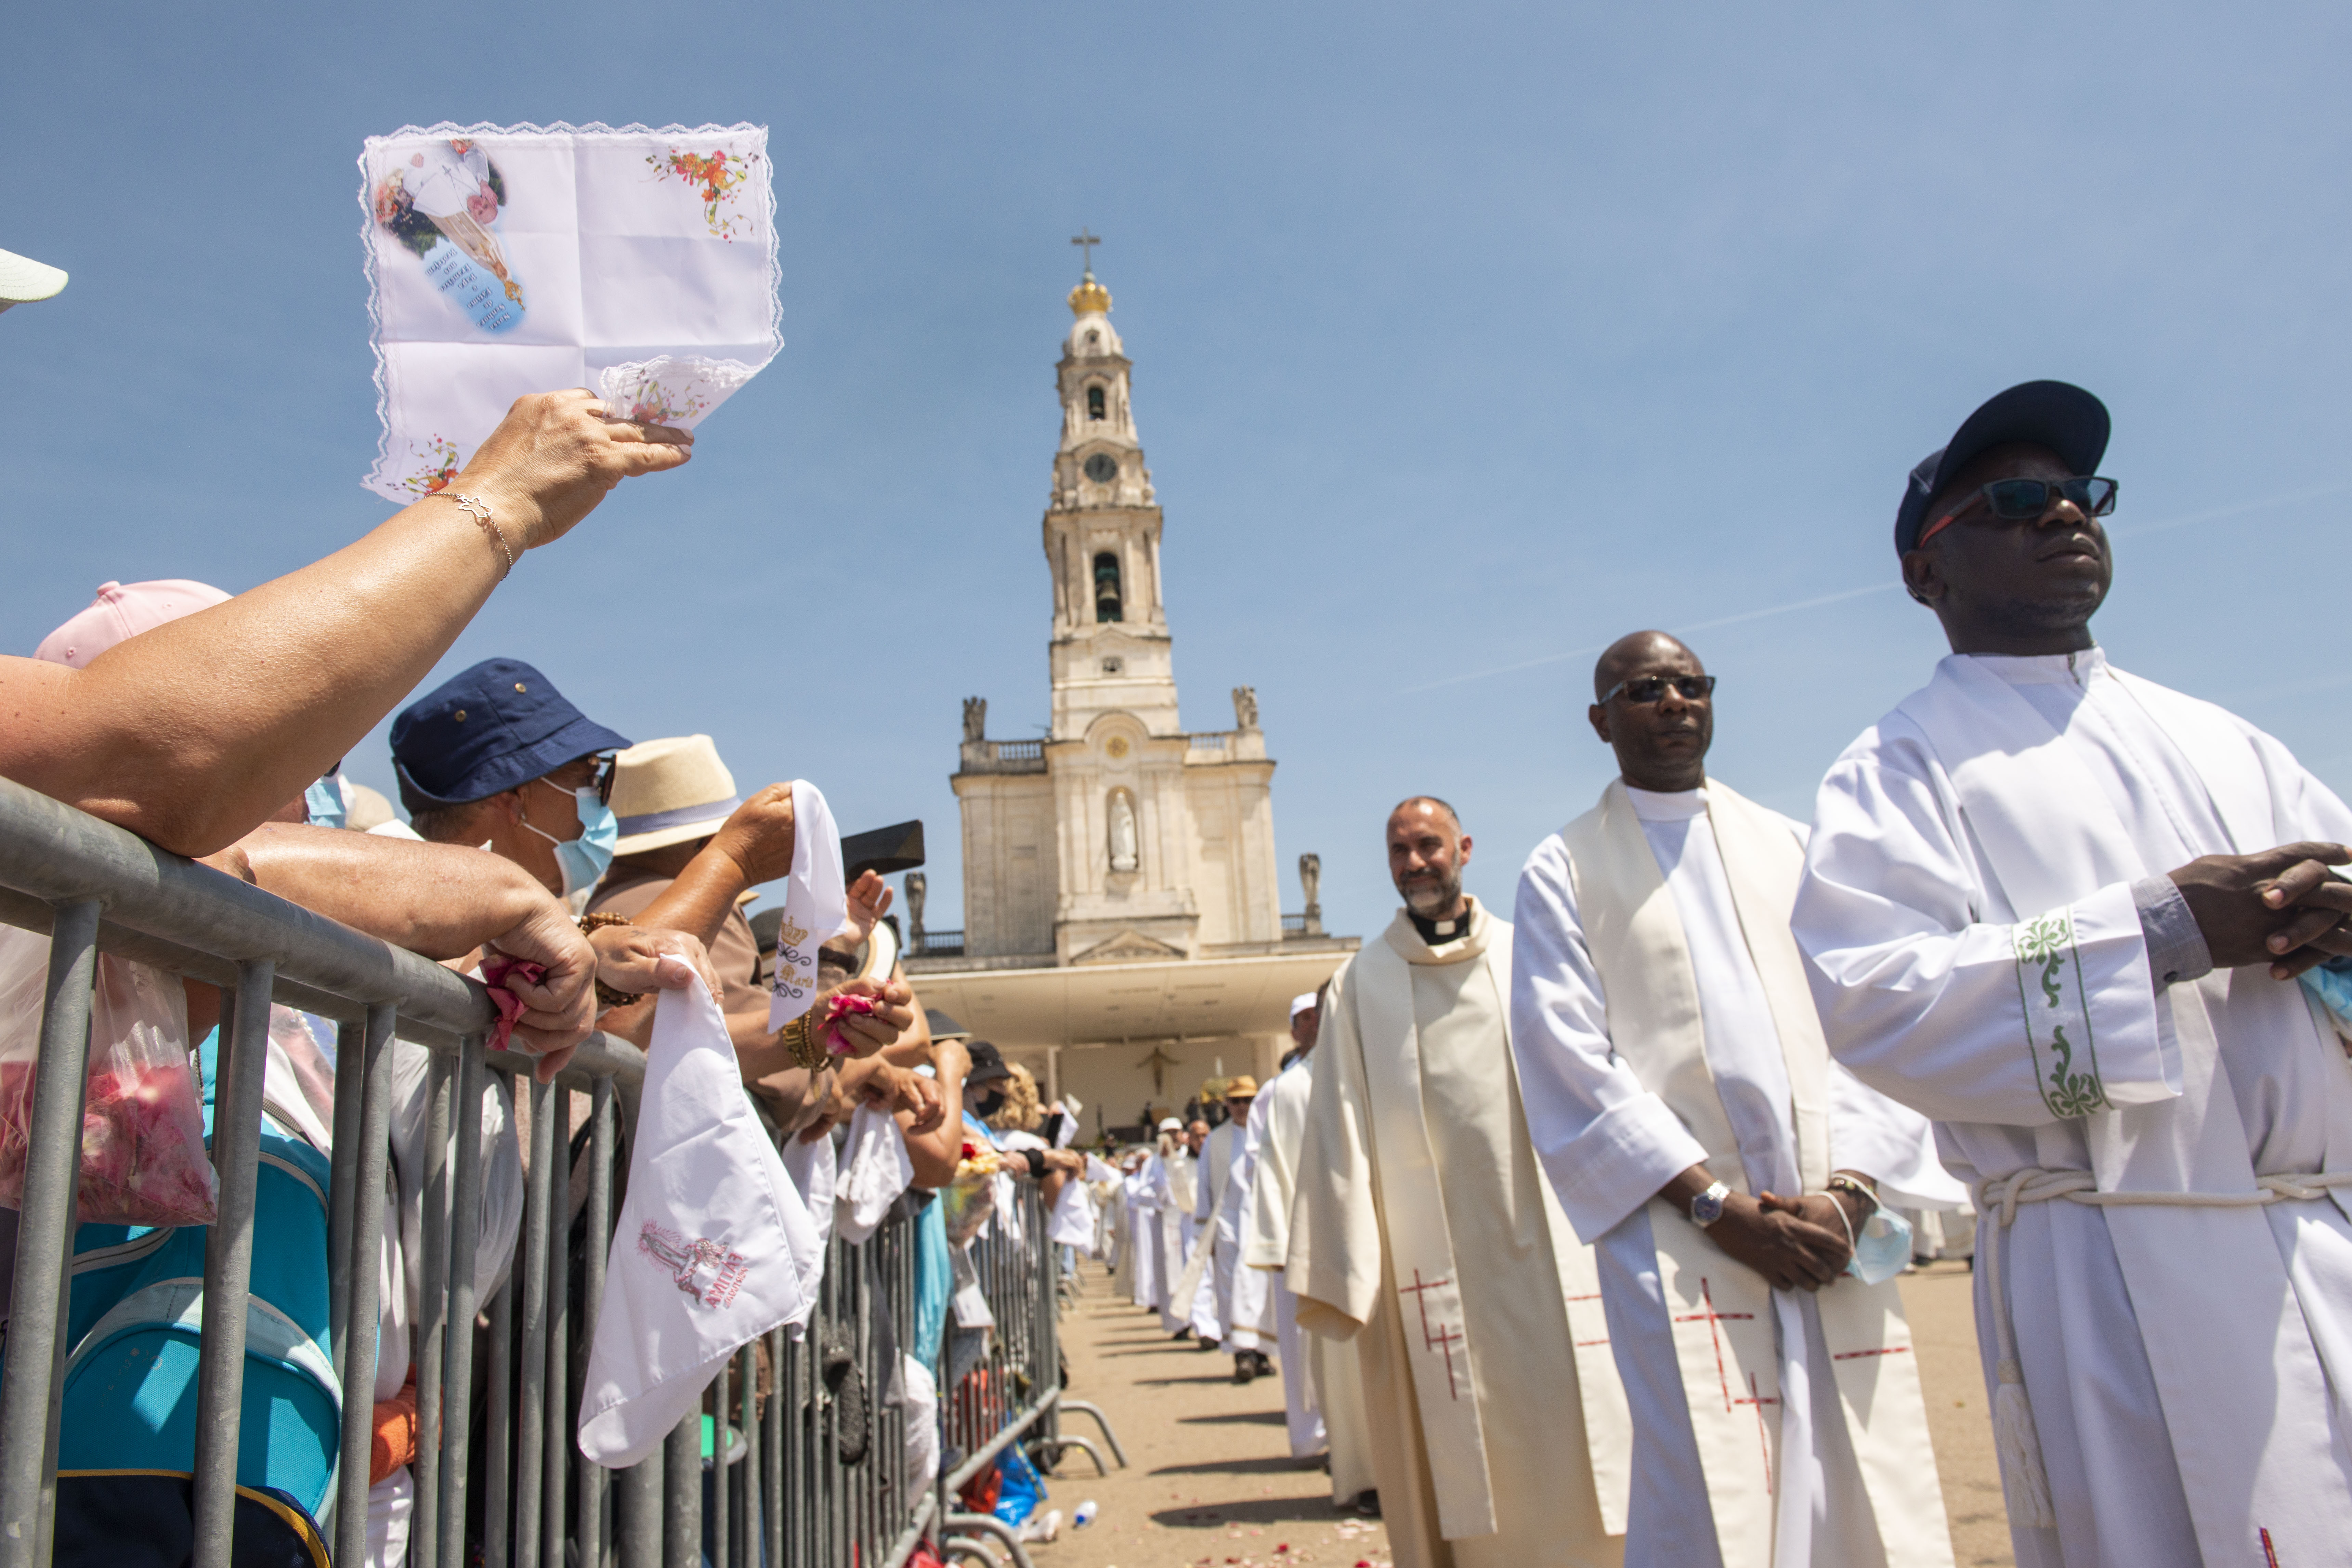 13 de Maio em Fátima, depois de 2 anos de restrições devido à pandemia o santuário voltou a encher-se de fieis numa cerimonia onde se rezou pela paz